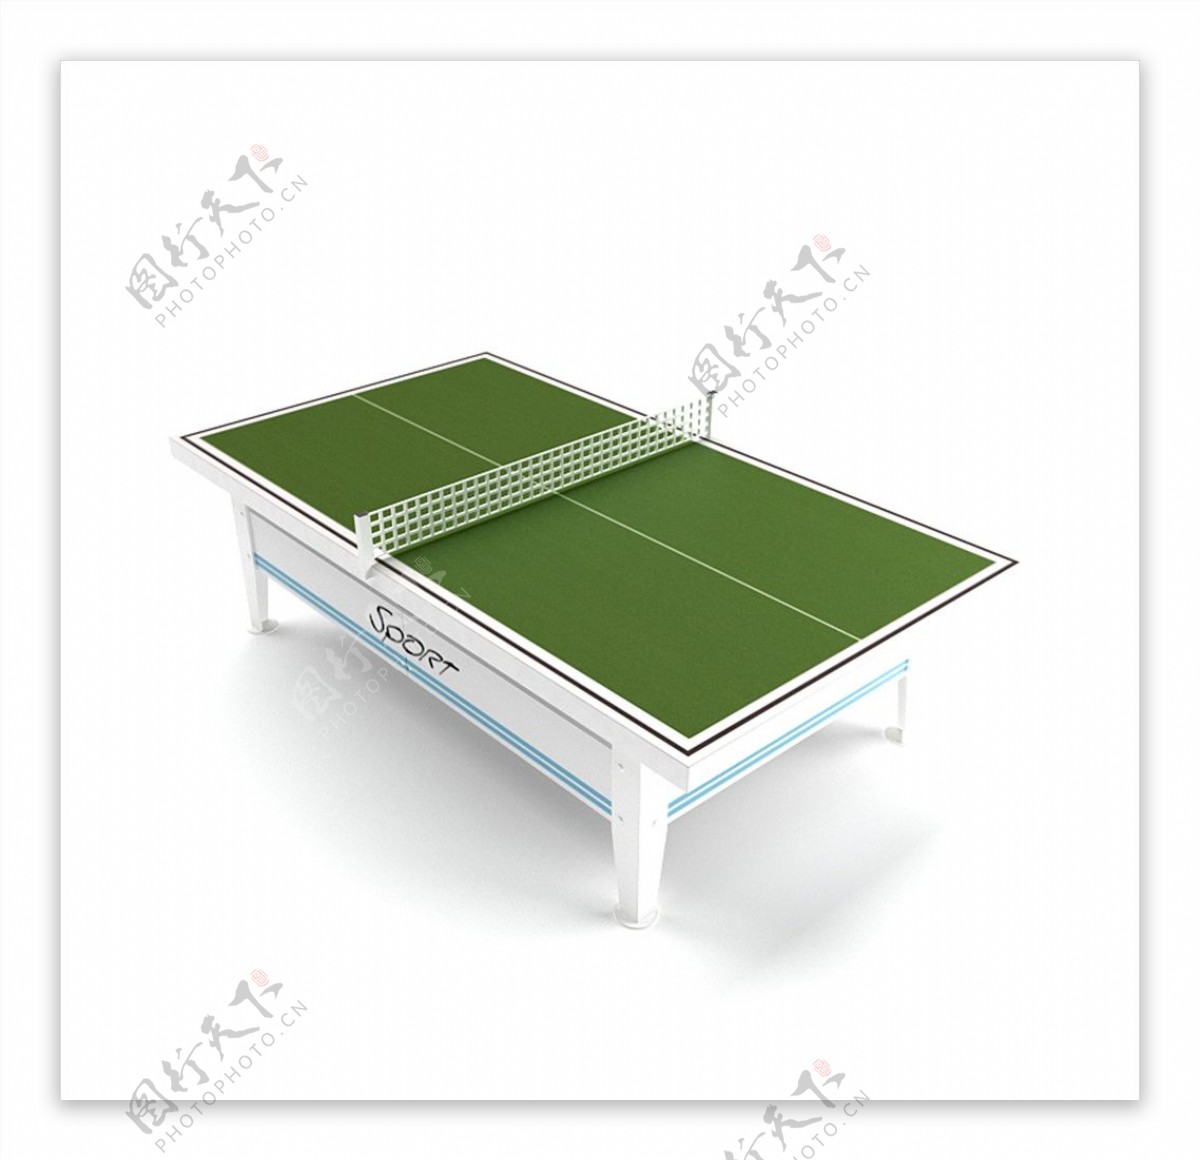 乒乓球桌模型